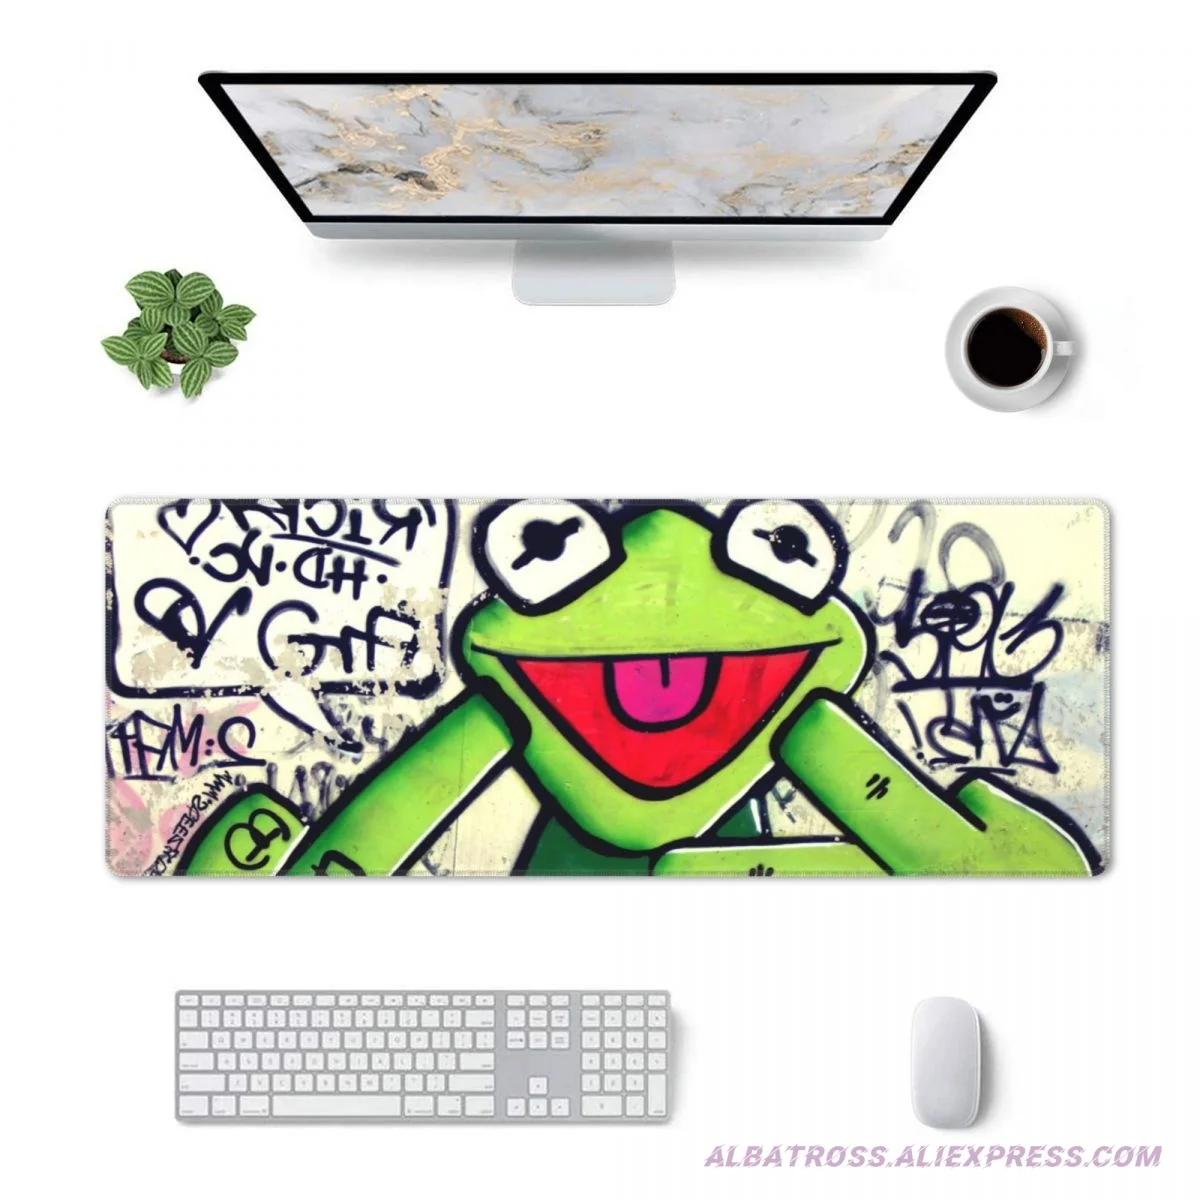 אמנותי צפרדע גרפיטי עכבר המשחקים משטח גומי קצוות תפורים Mousepad 31.5